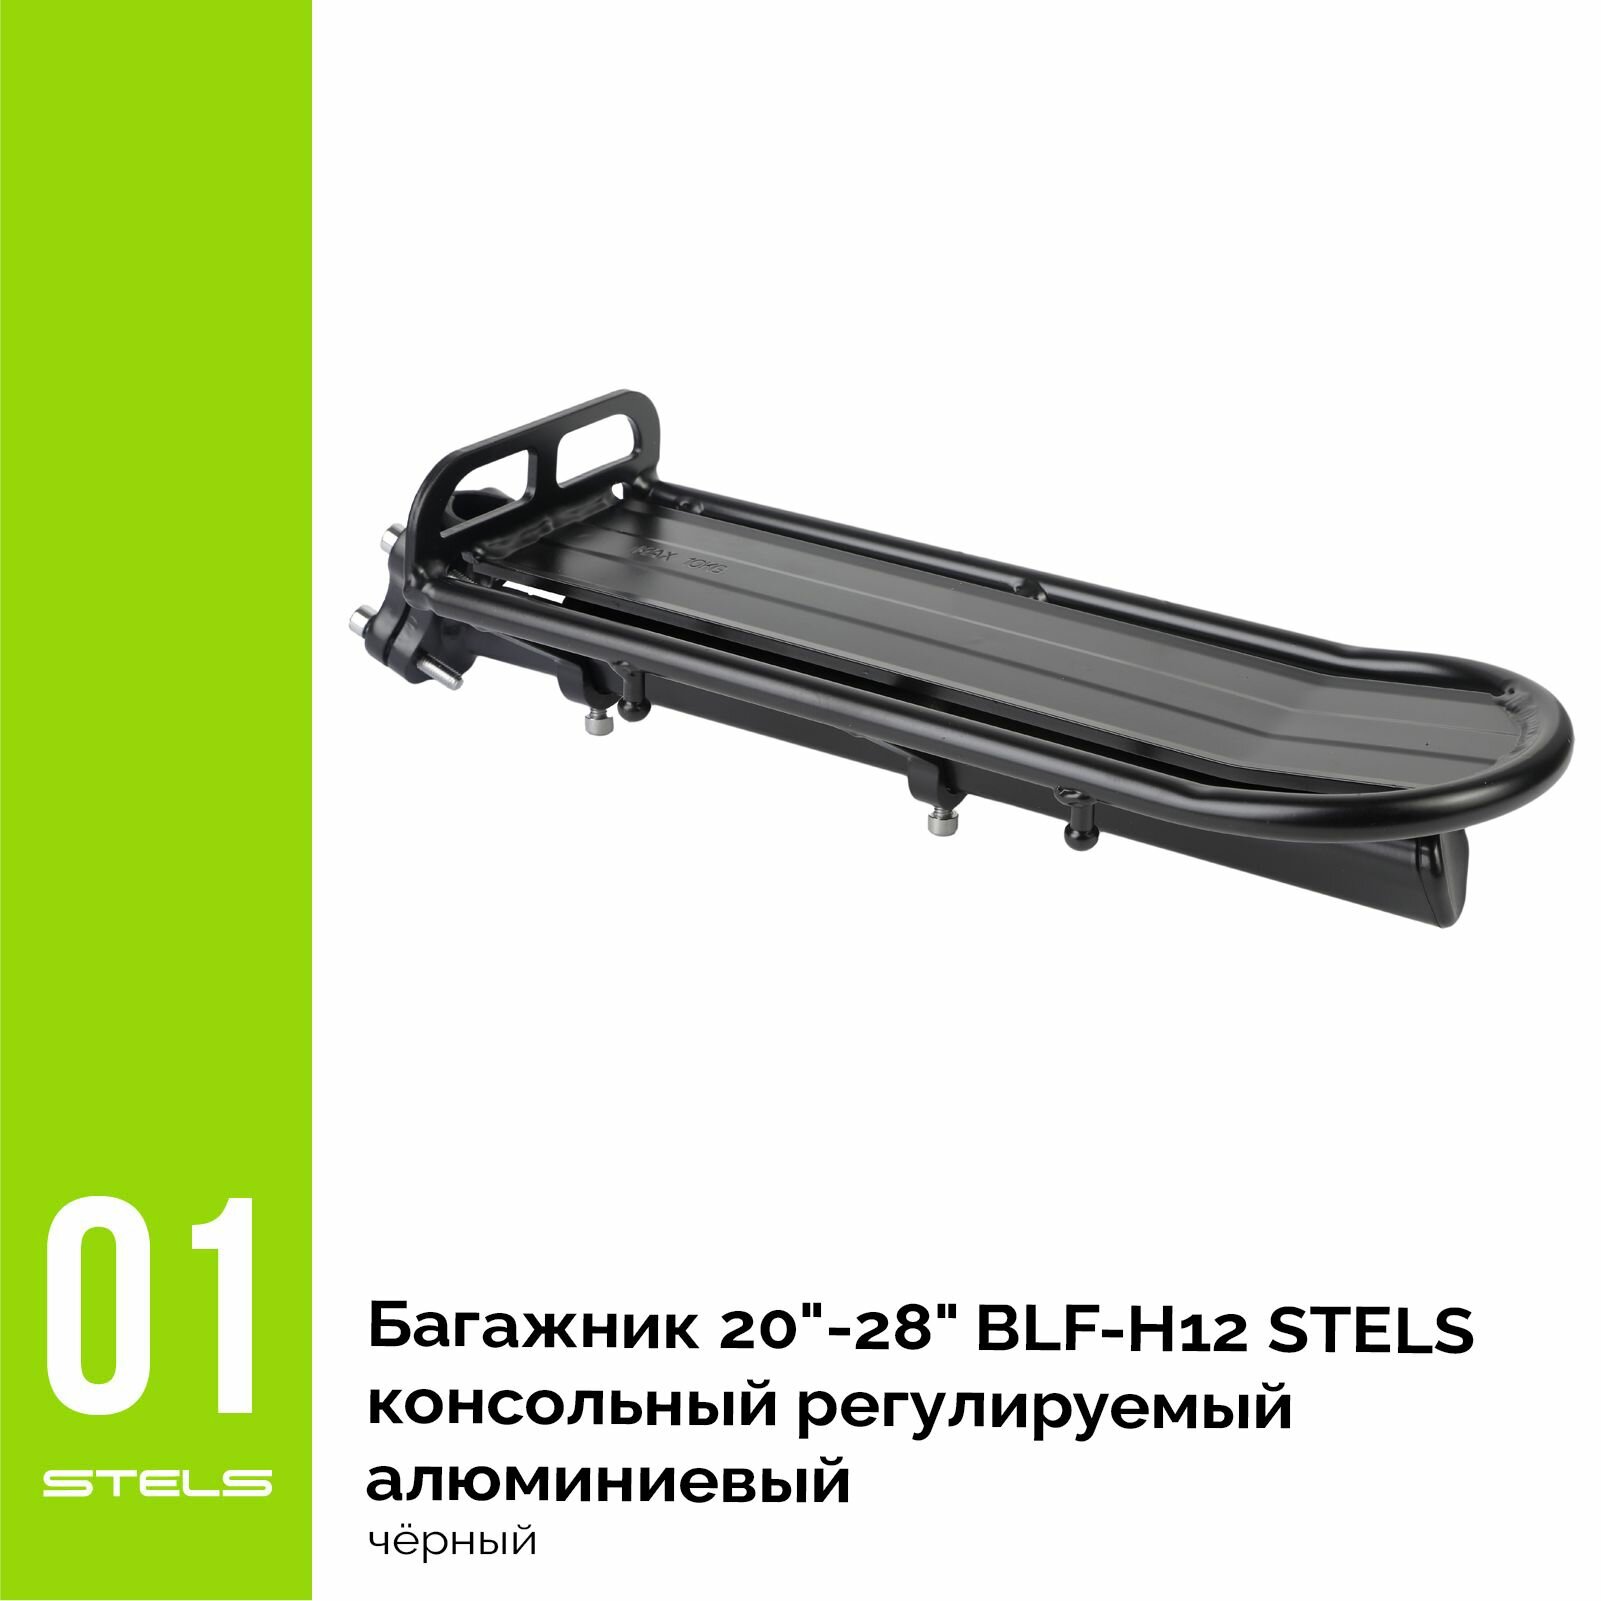 Багажник для велосипеда STELS 20"-28" BLF-H12 консольный регулируемый алюминиевый чёрный